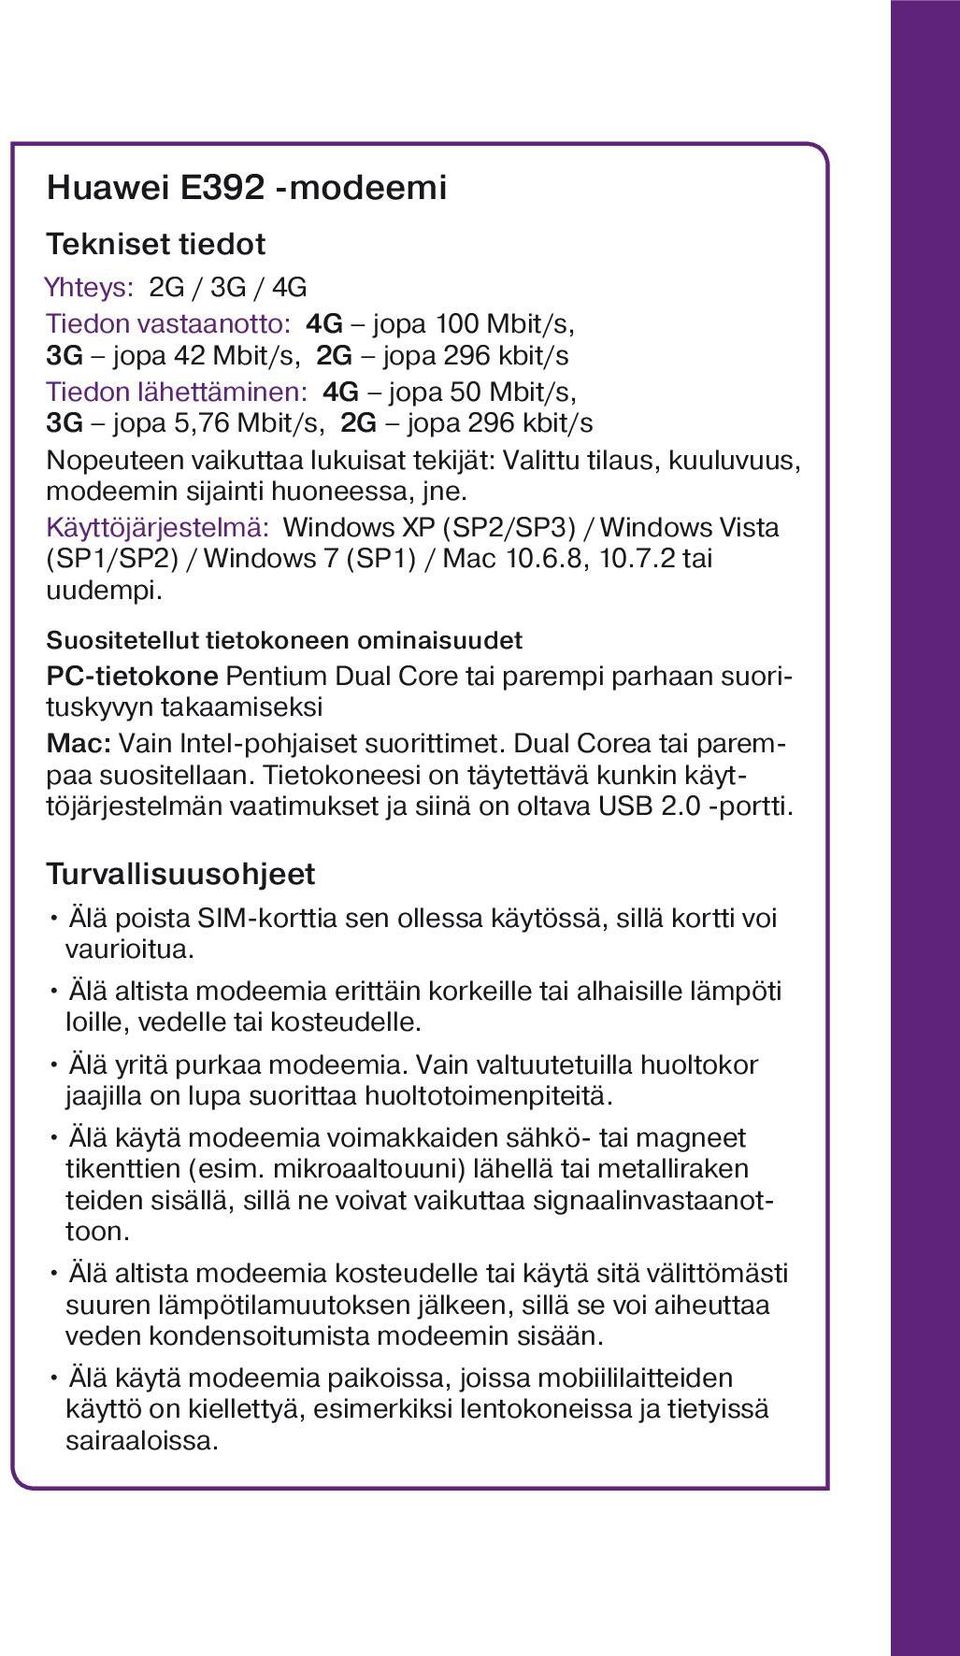 Käyttöjärjestelmä: Windows XP (SP2/SP3) / Windows Vista (SP1/SP2) / Windows 7 (SP1) / Mac 10.6.8, 10.7.2 tai uudempi.